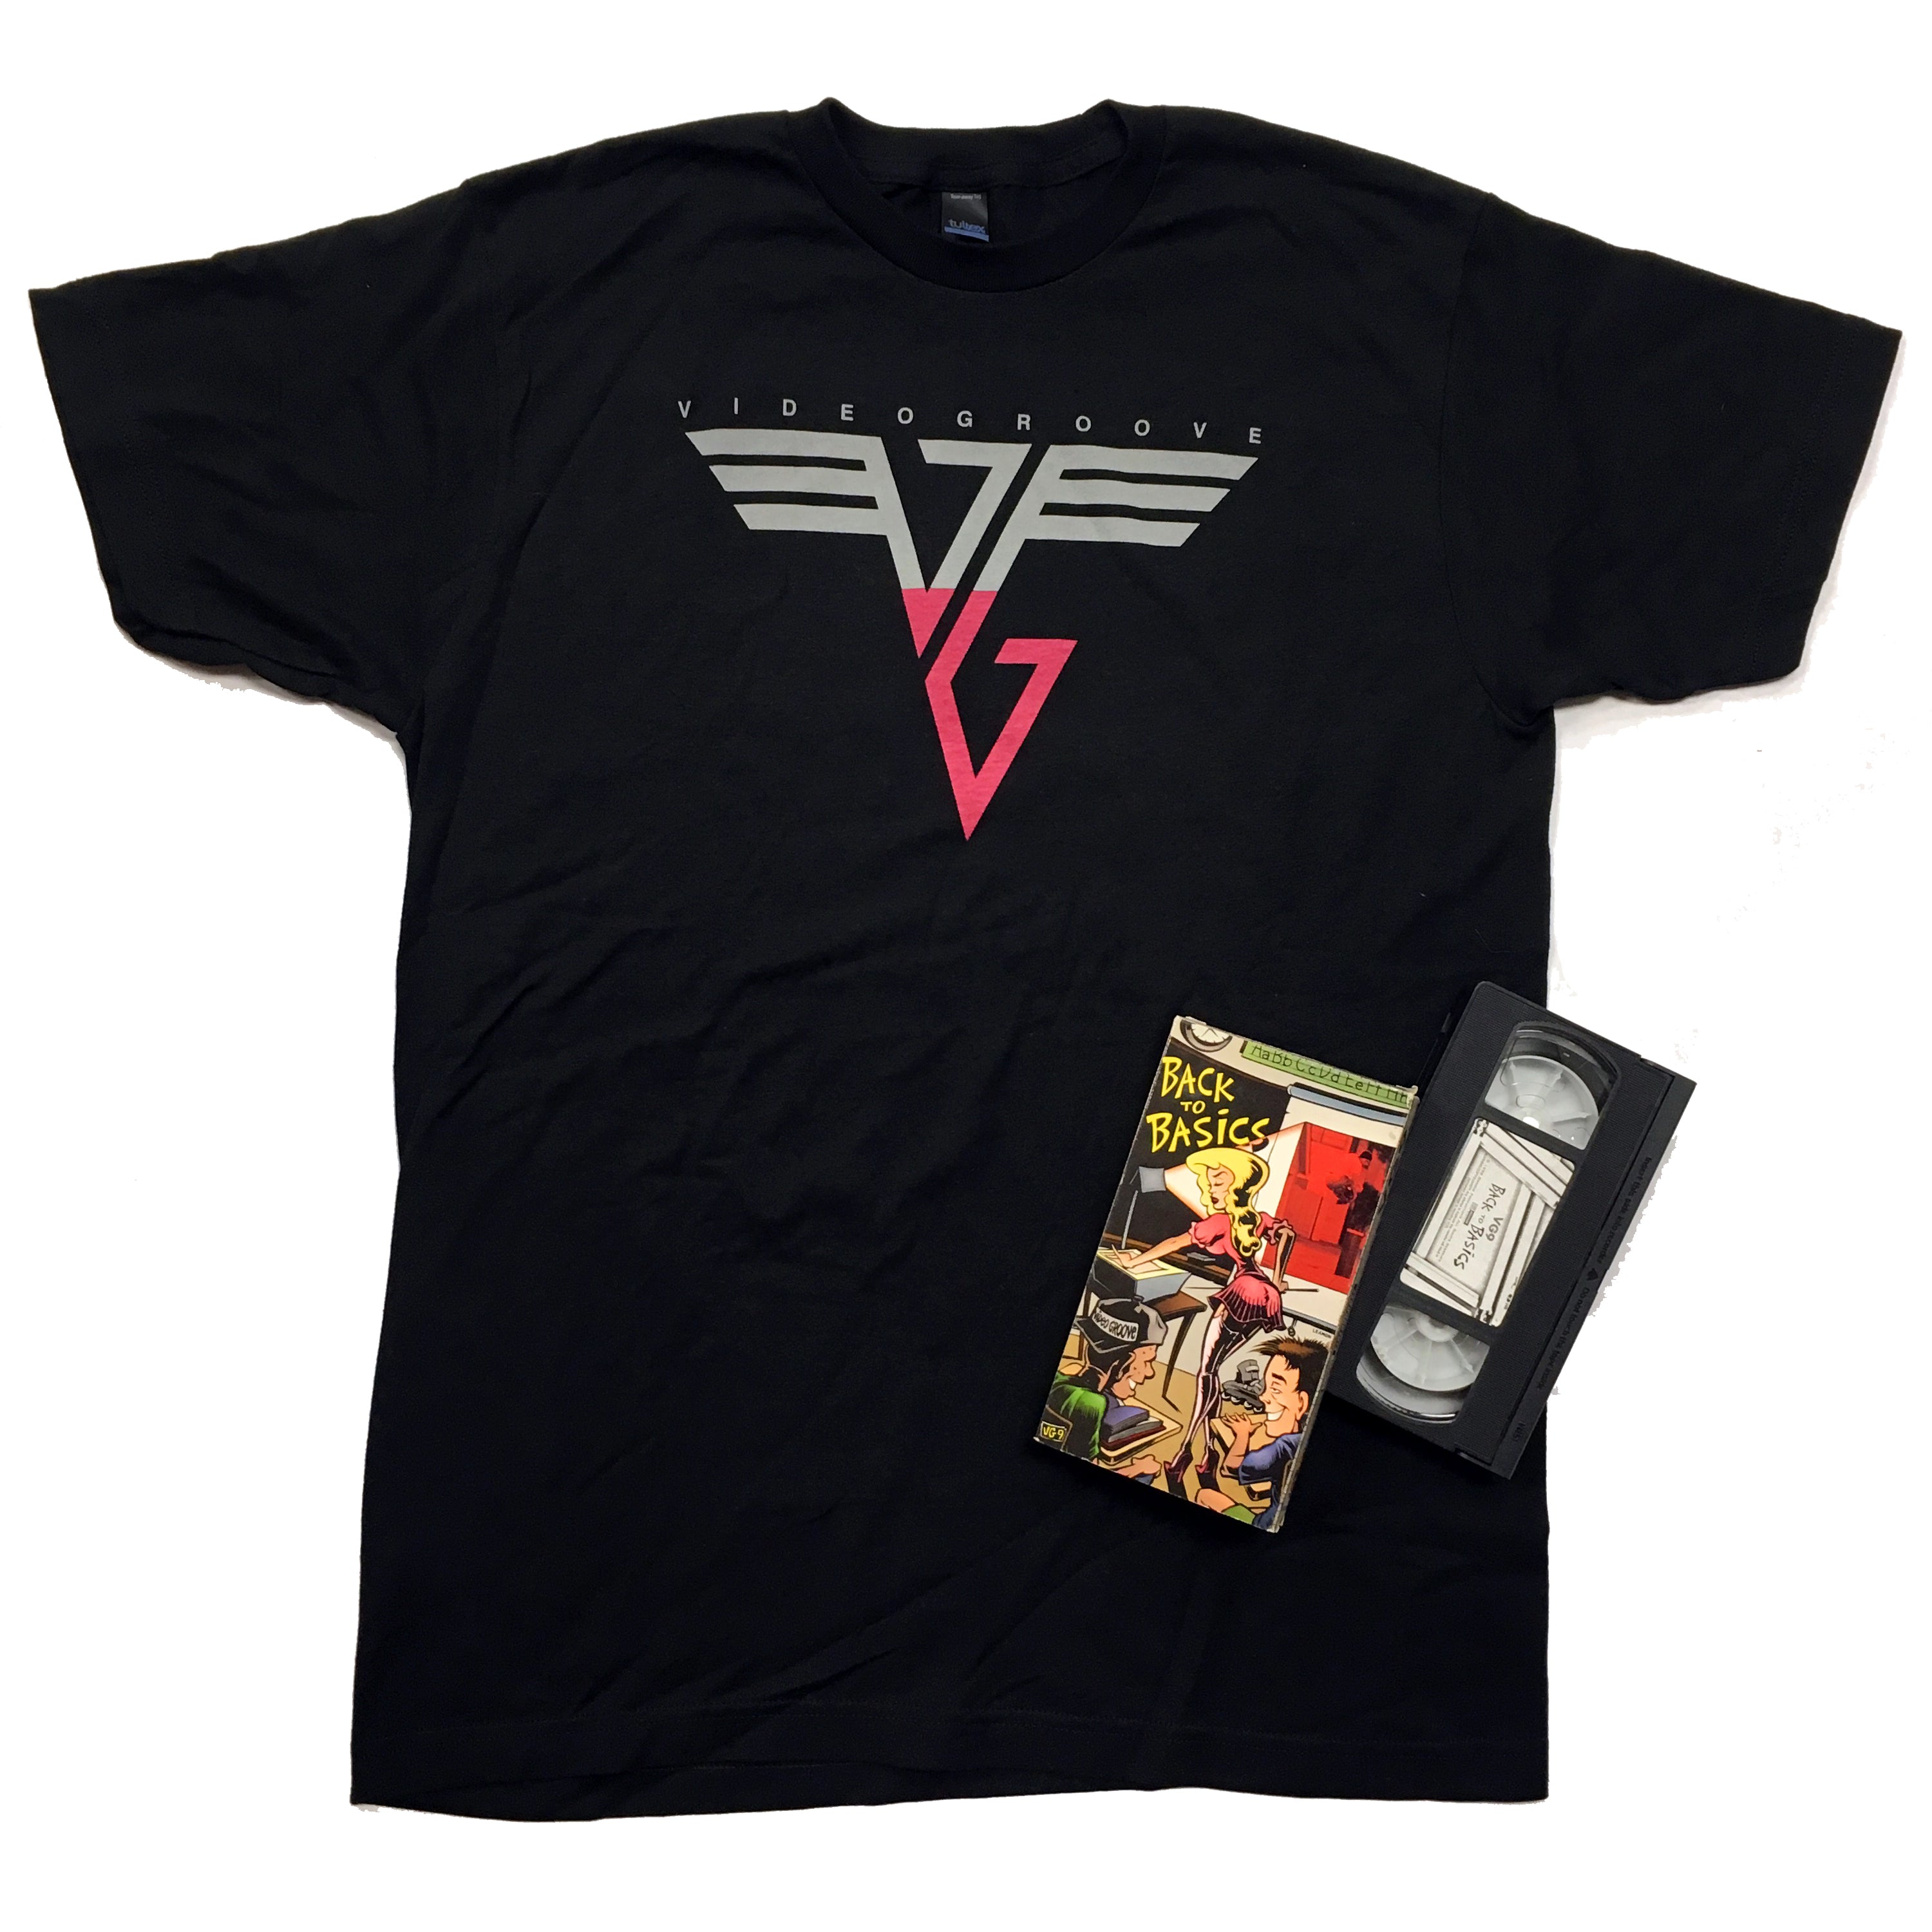 VG Van Halen shirt